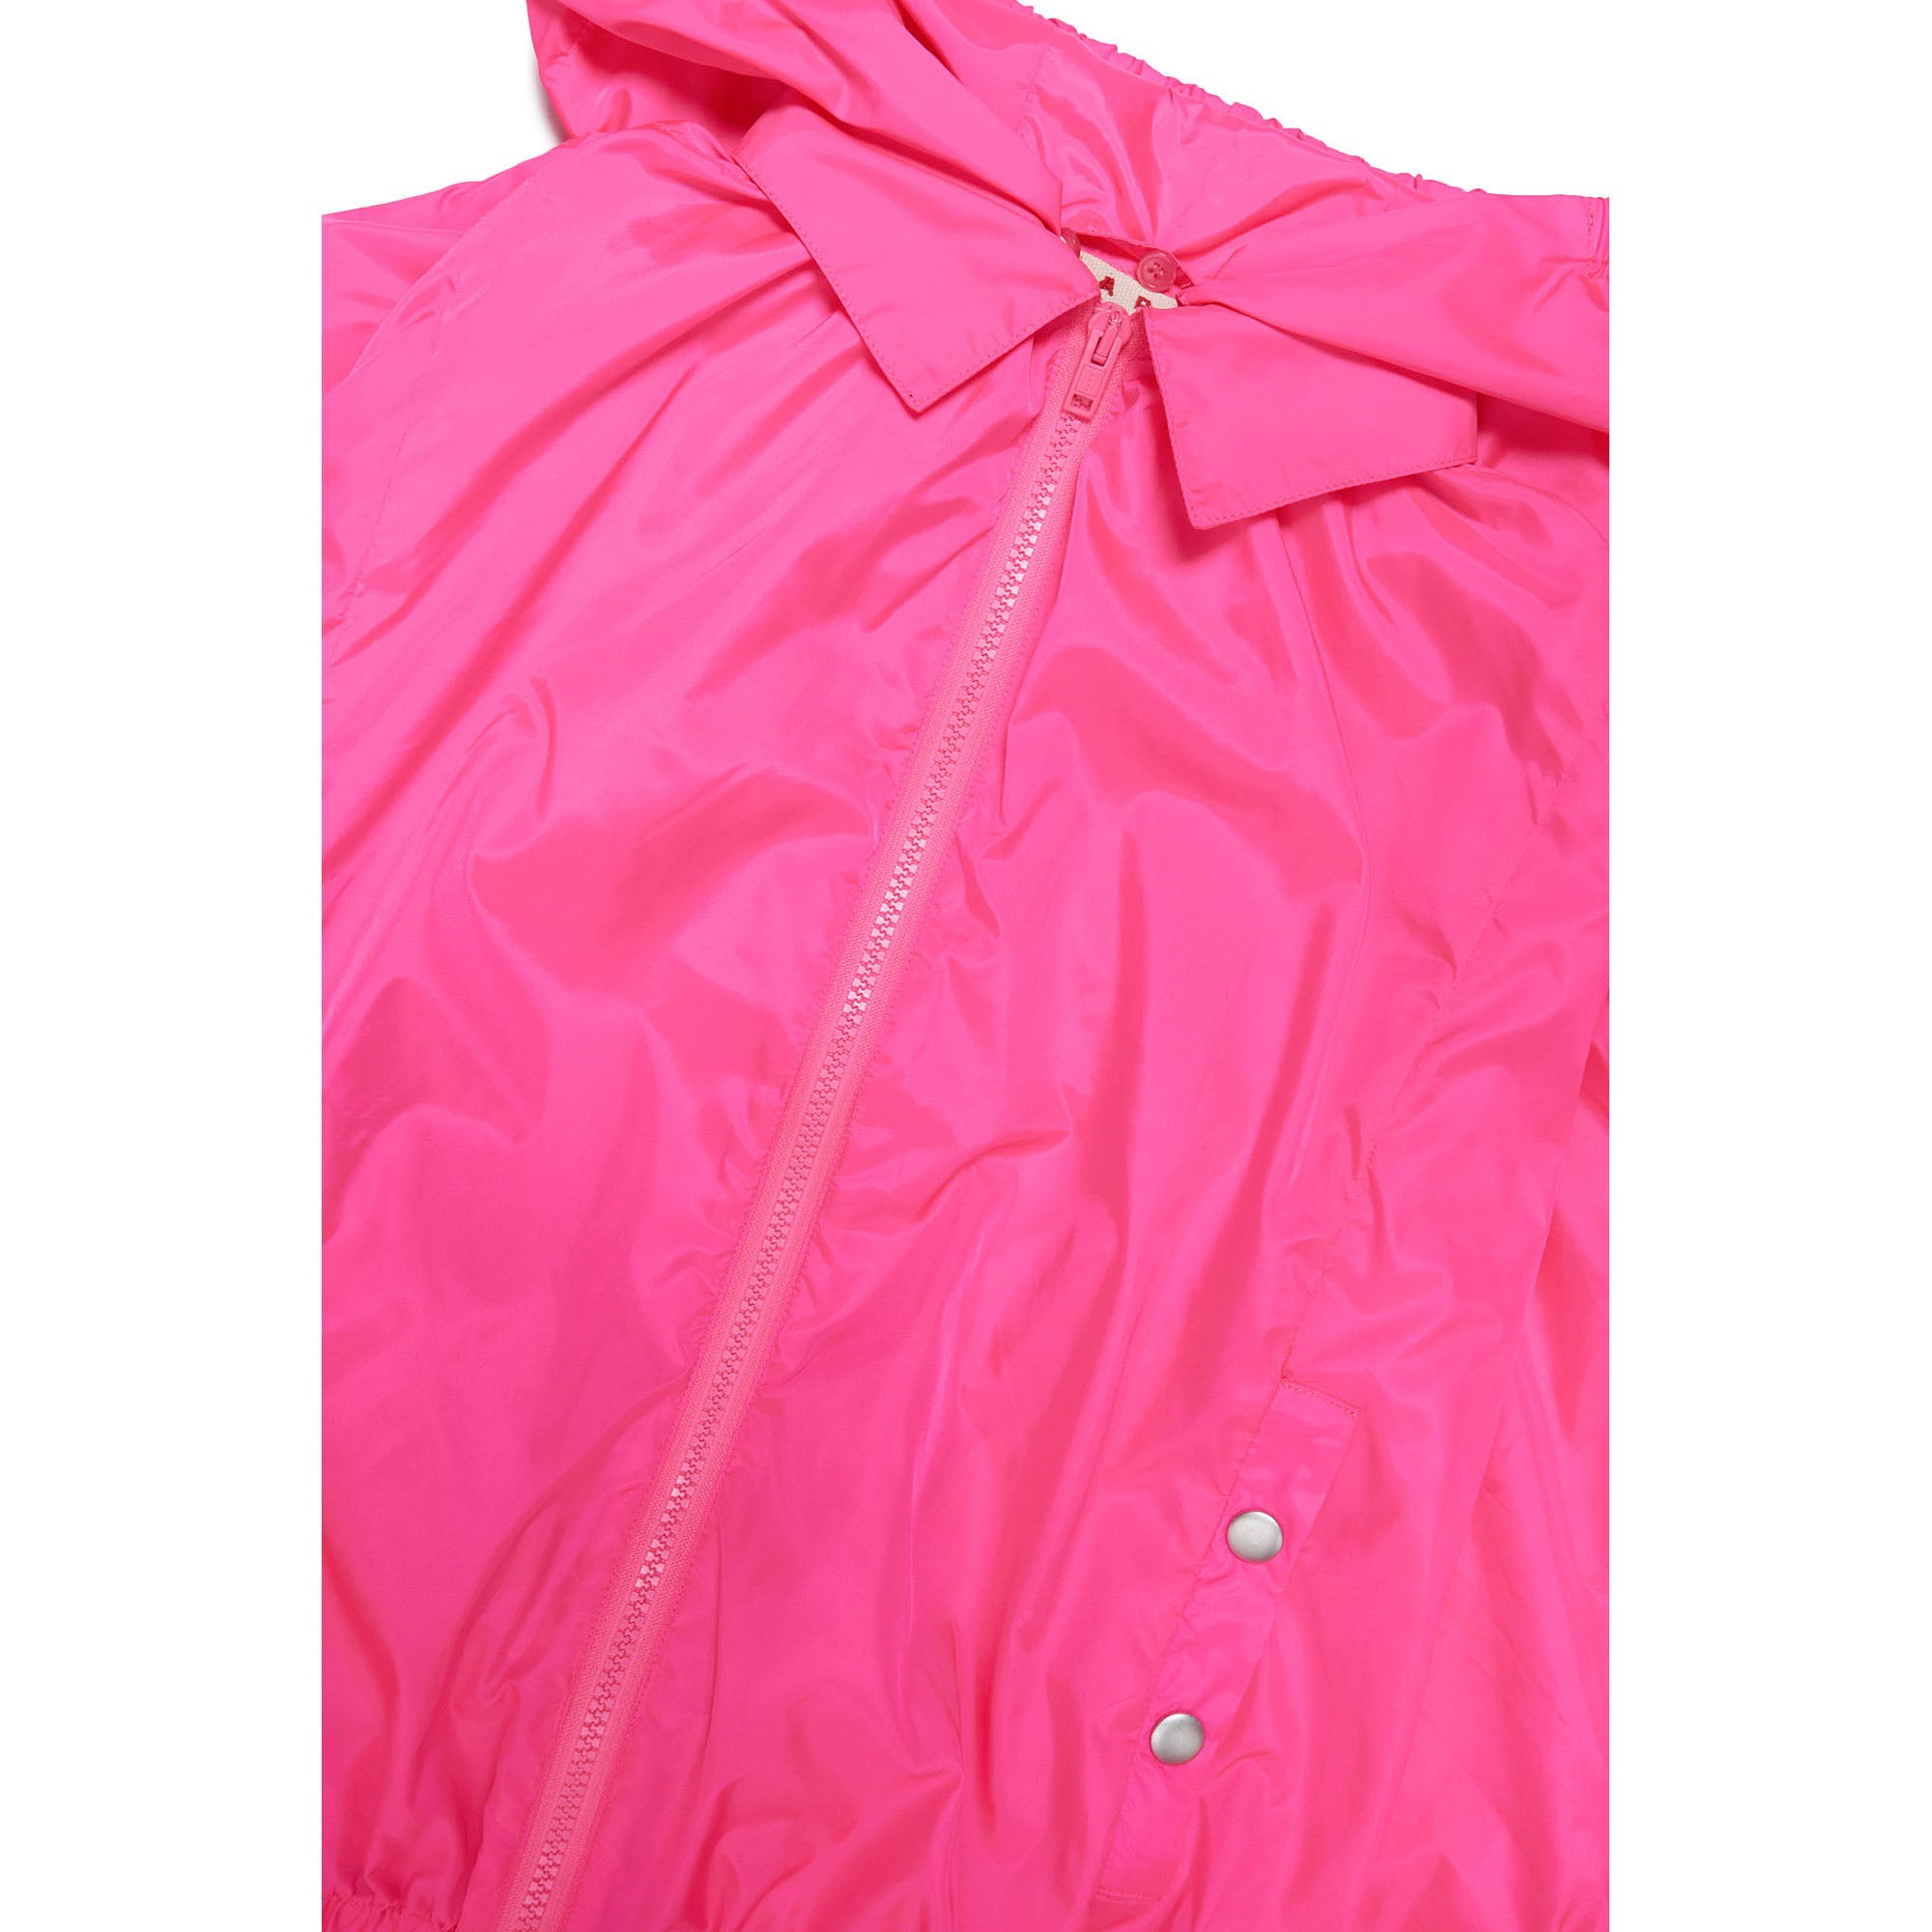 Girls Fluo Pink Zip-Up Jacket